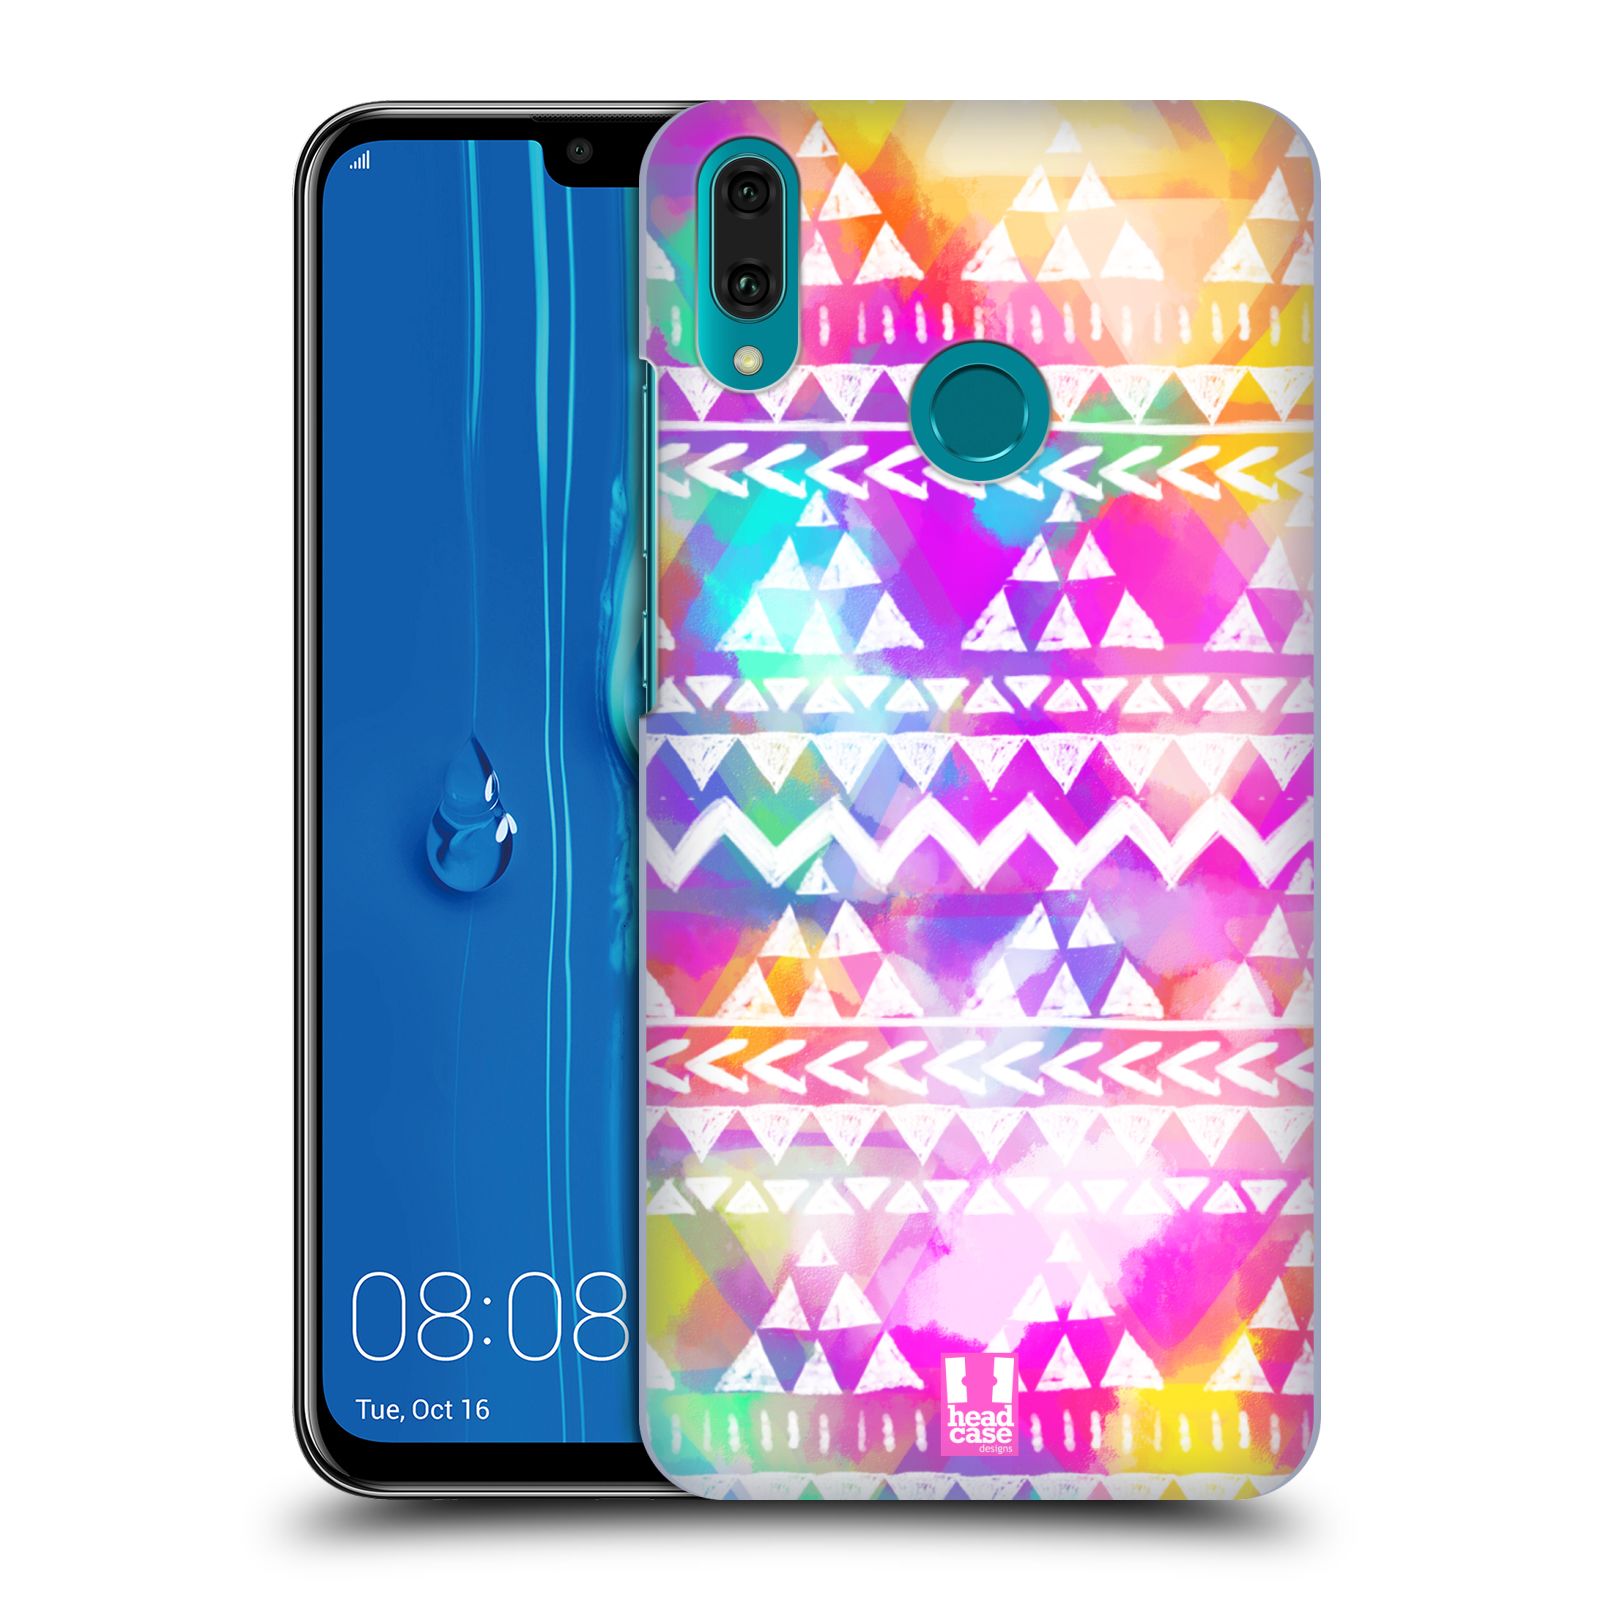 Pouzdro na mobil Huawei Y9 2019 - HEAD CASE - vzor CIK CAK barevné znaky ZÁŘIVA RŮŽOVÁ